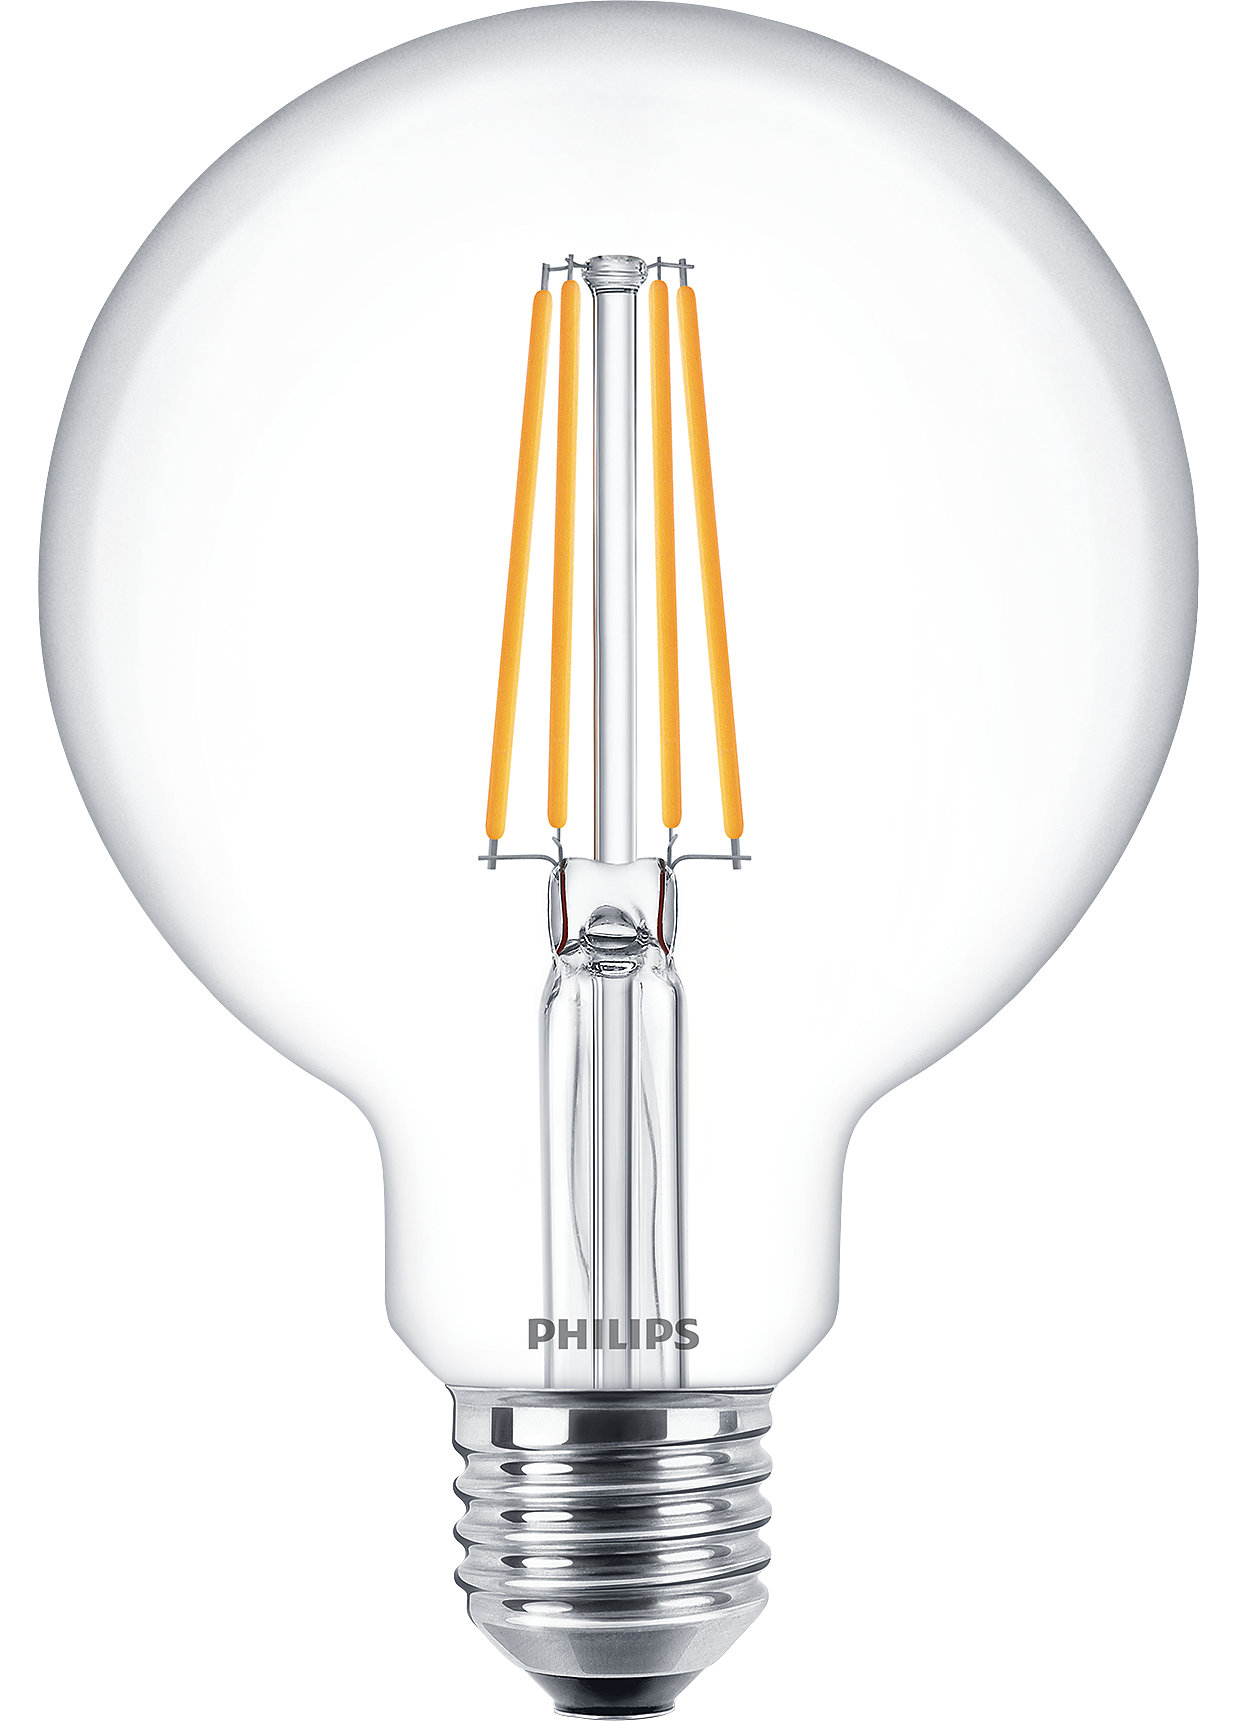 De CorePro LED-lamp combineert de klassieke vorm van gloeilampen met de voordelen van duurzame LED-technologie en is geschikt voor dagelijks gebruik